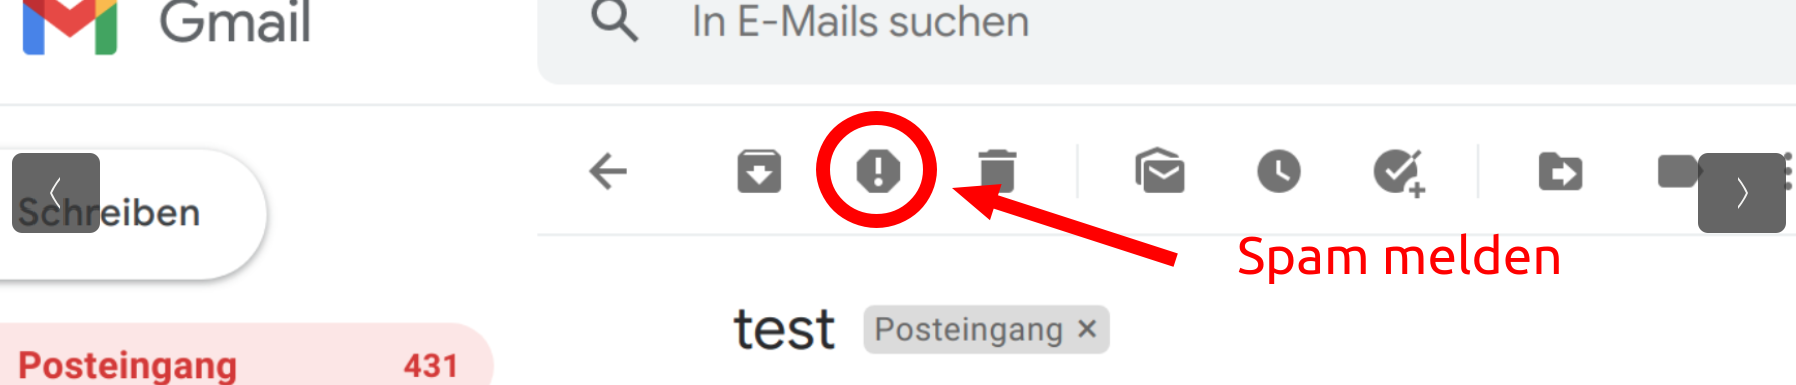 spam melden screenshot (gmail)